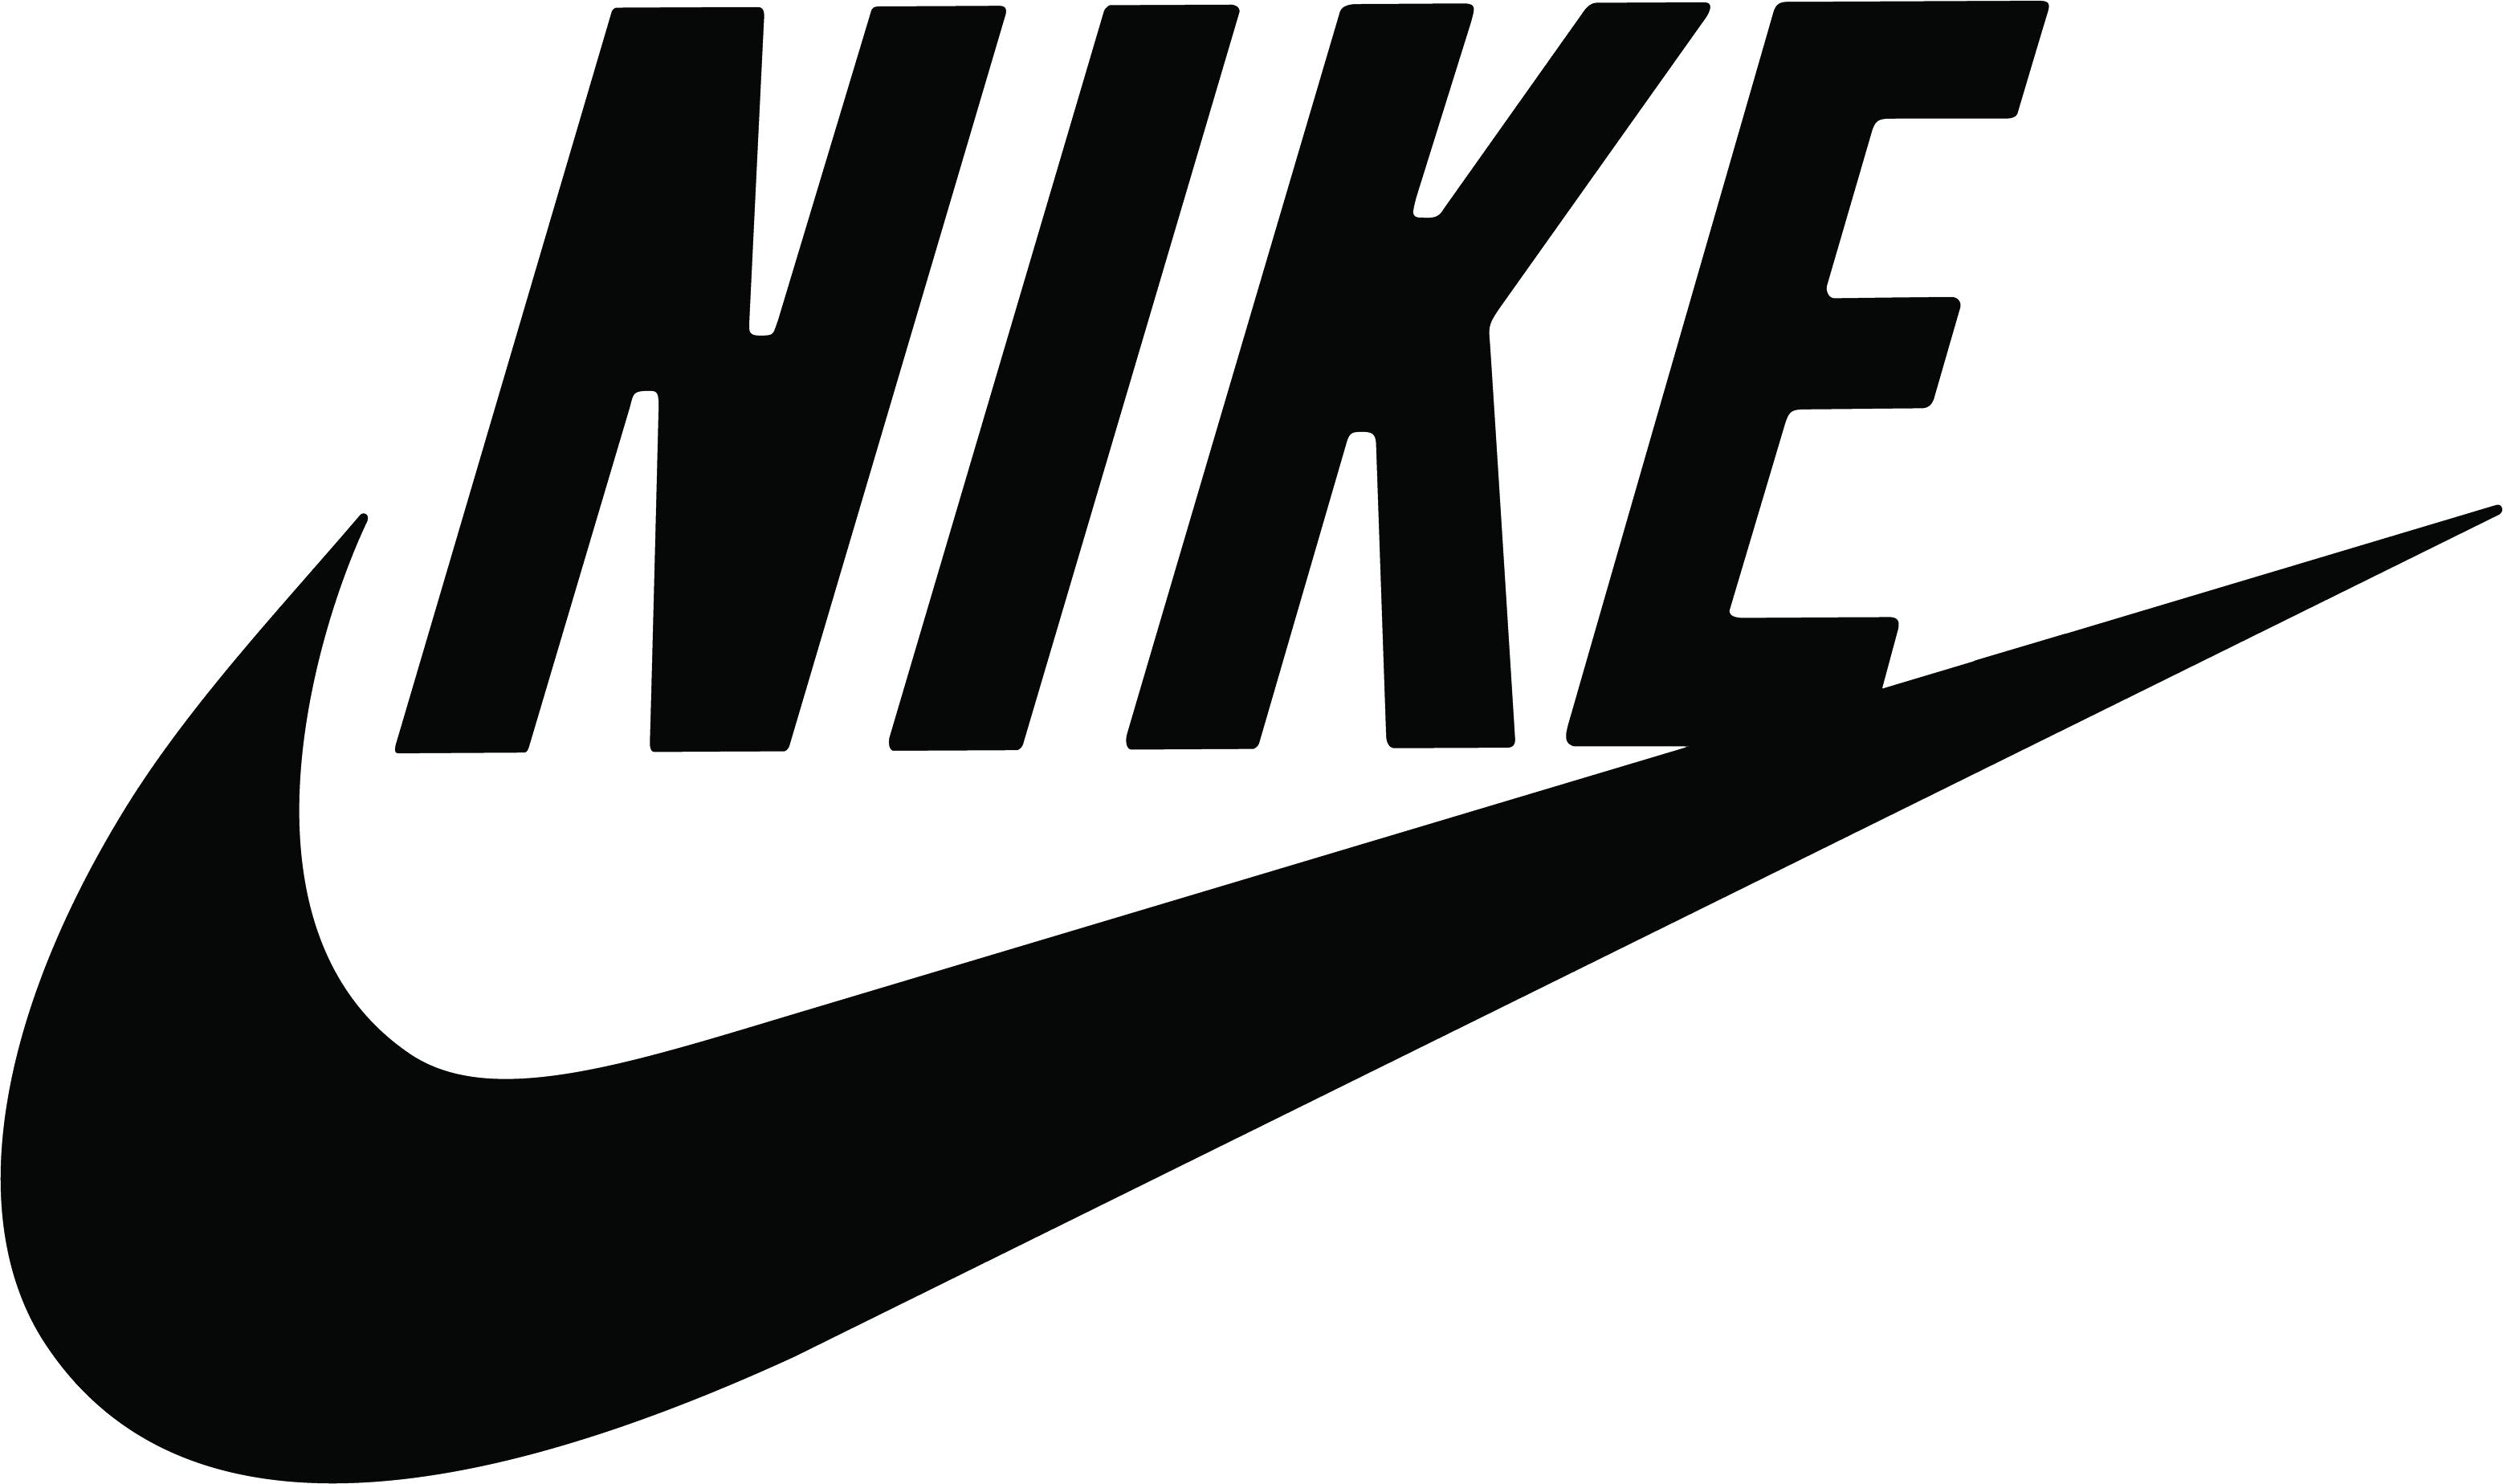 Nike logo PNG image free download